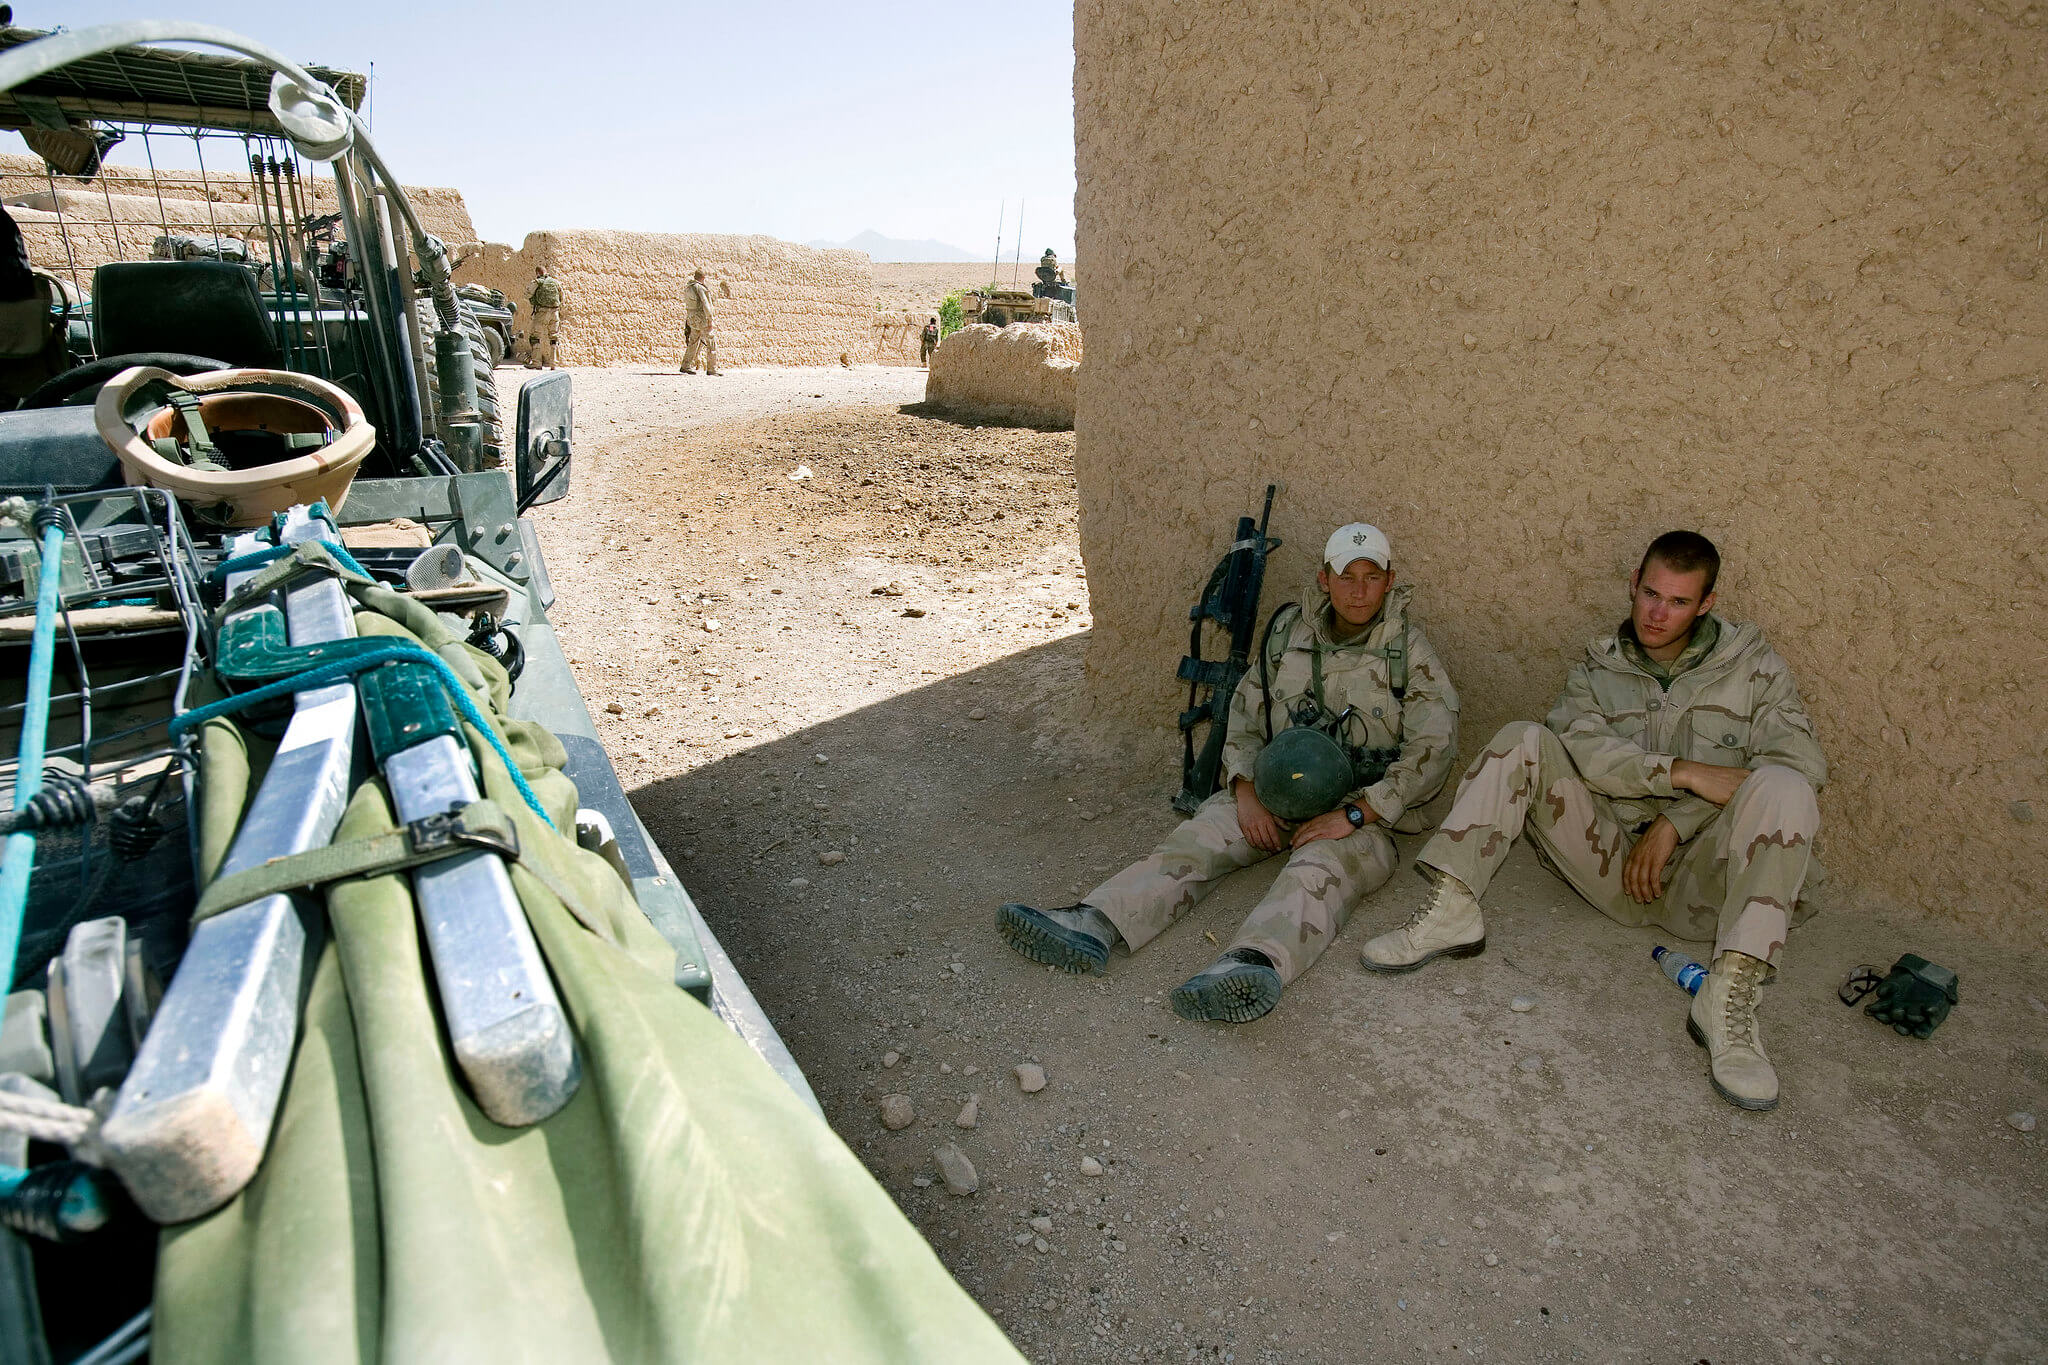 Kamminga - Eenheden van de zogeheten 42 Bataljon Limburgse jagers tijdens een huiszoeking in Afghanistan in 2007. ResoluteSupportMedia- Flickr